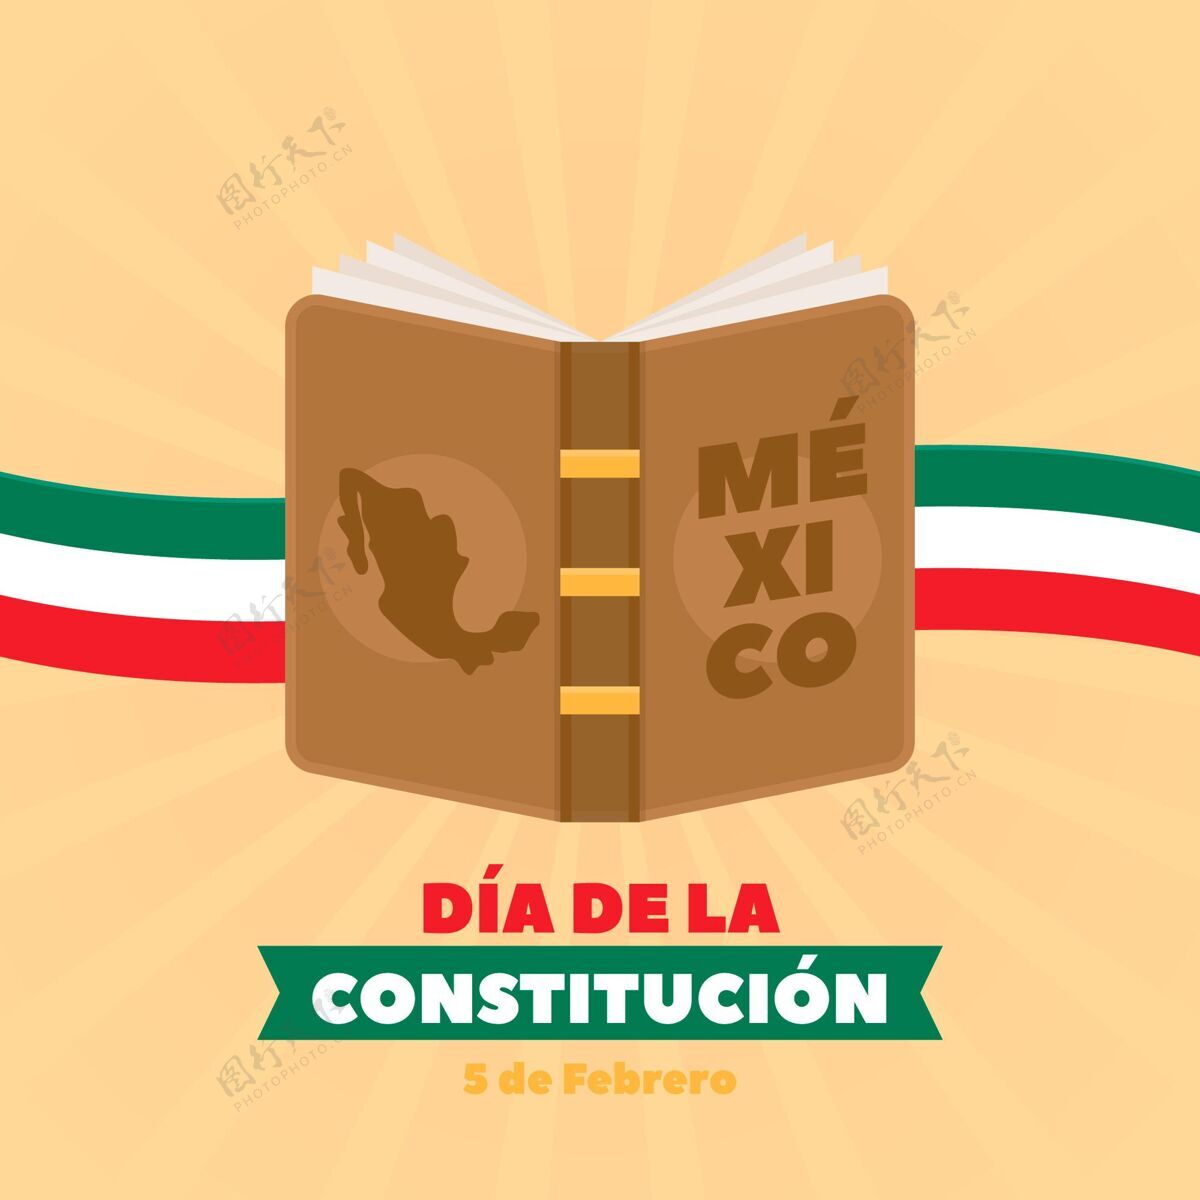 墨西哥墨西哥宪法日庆祝爱国国家